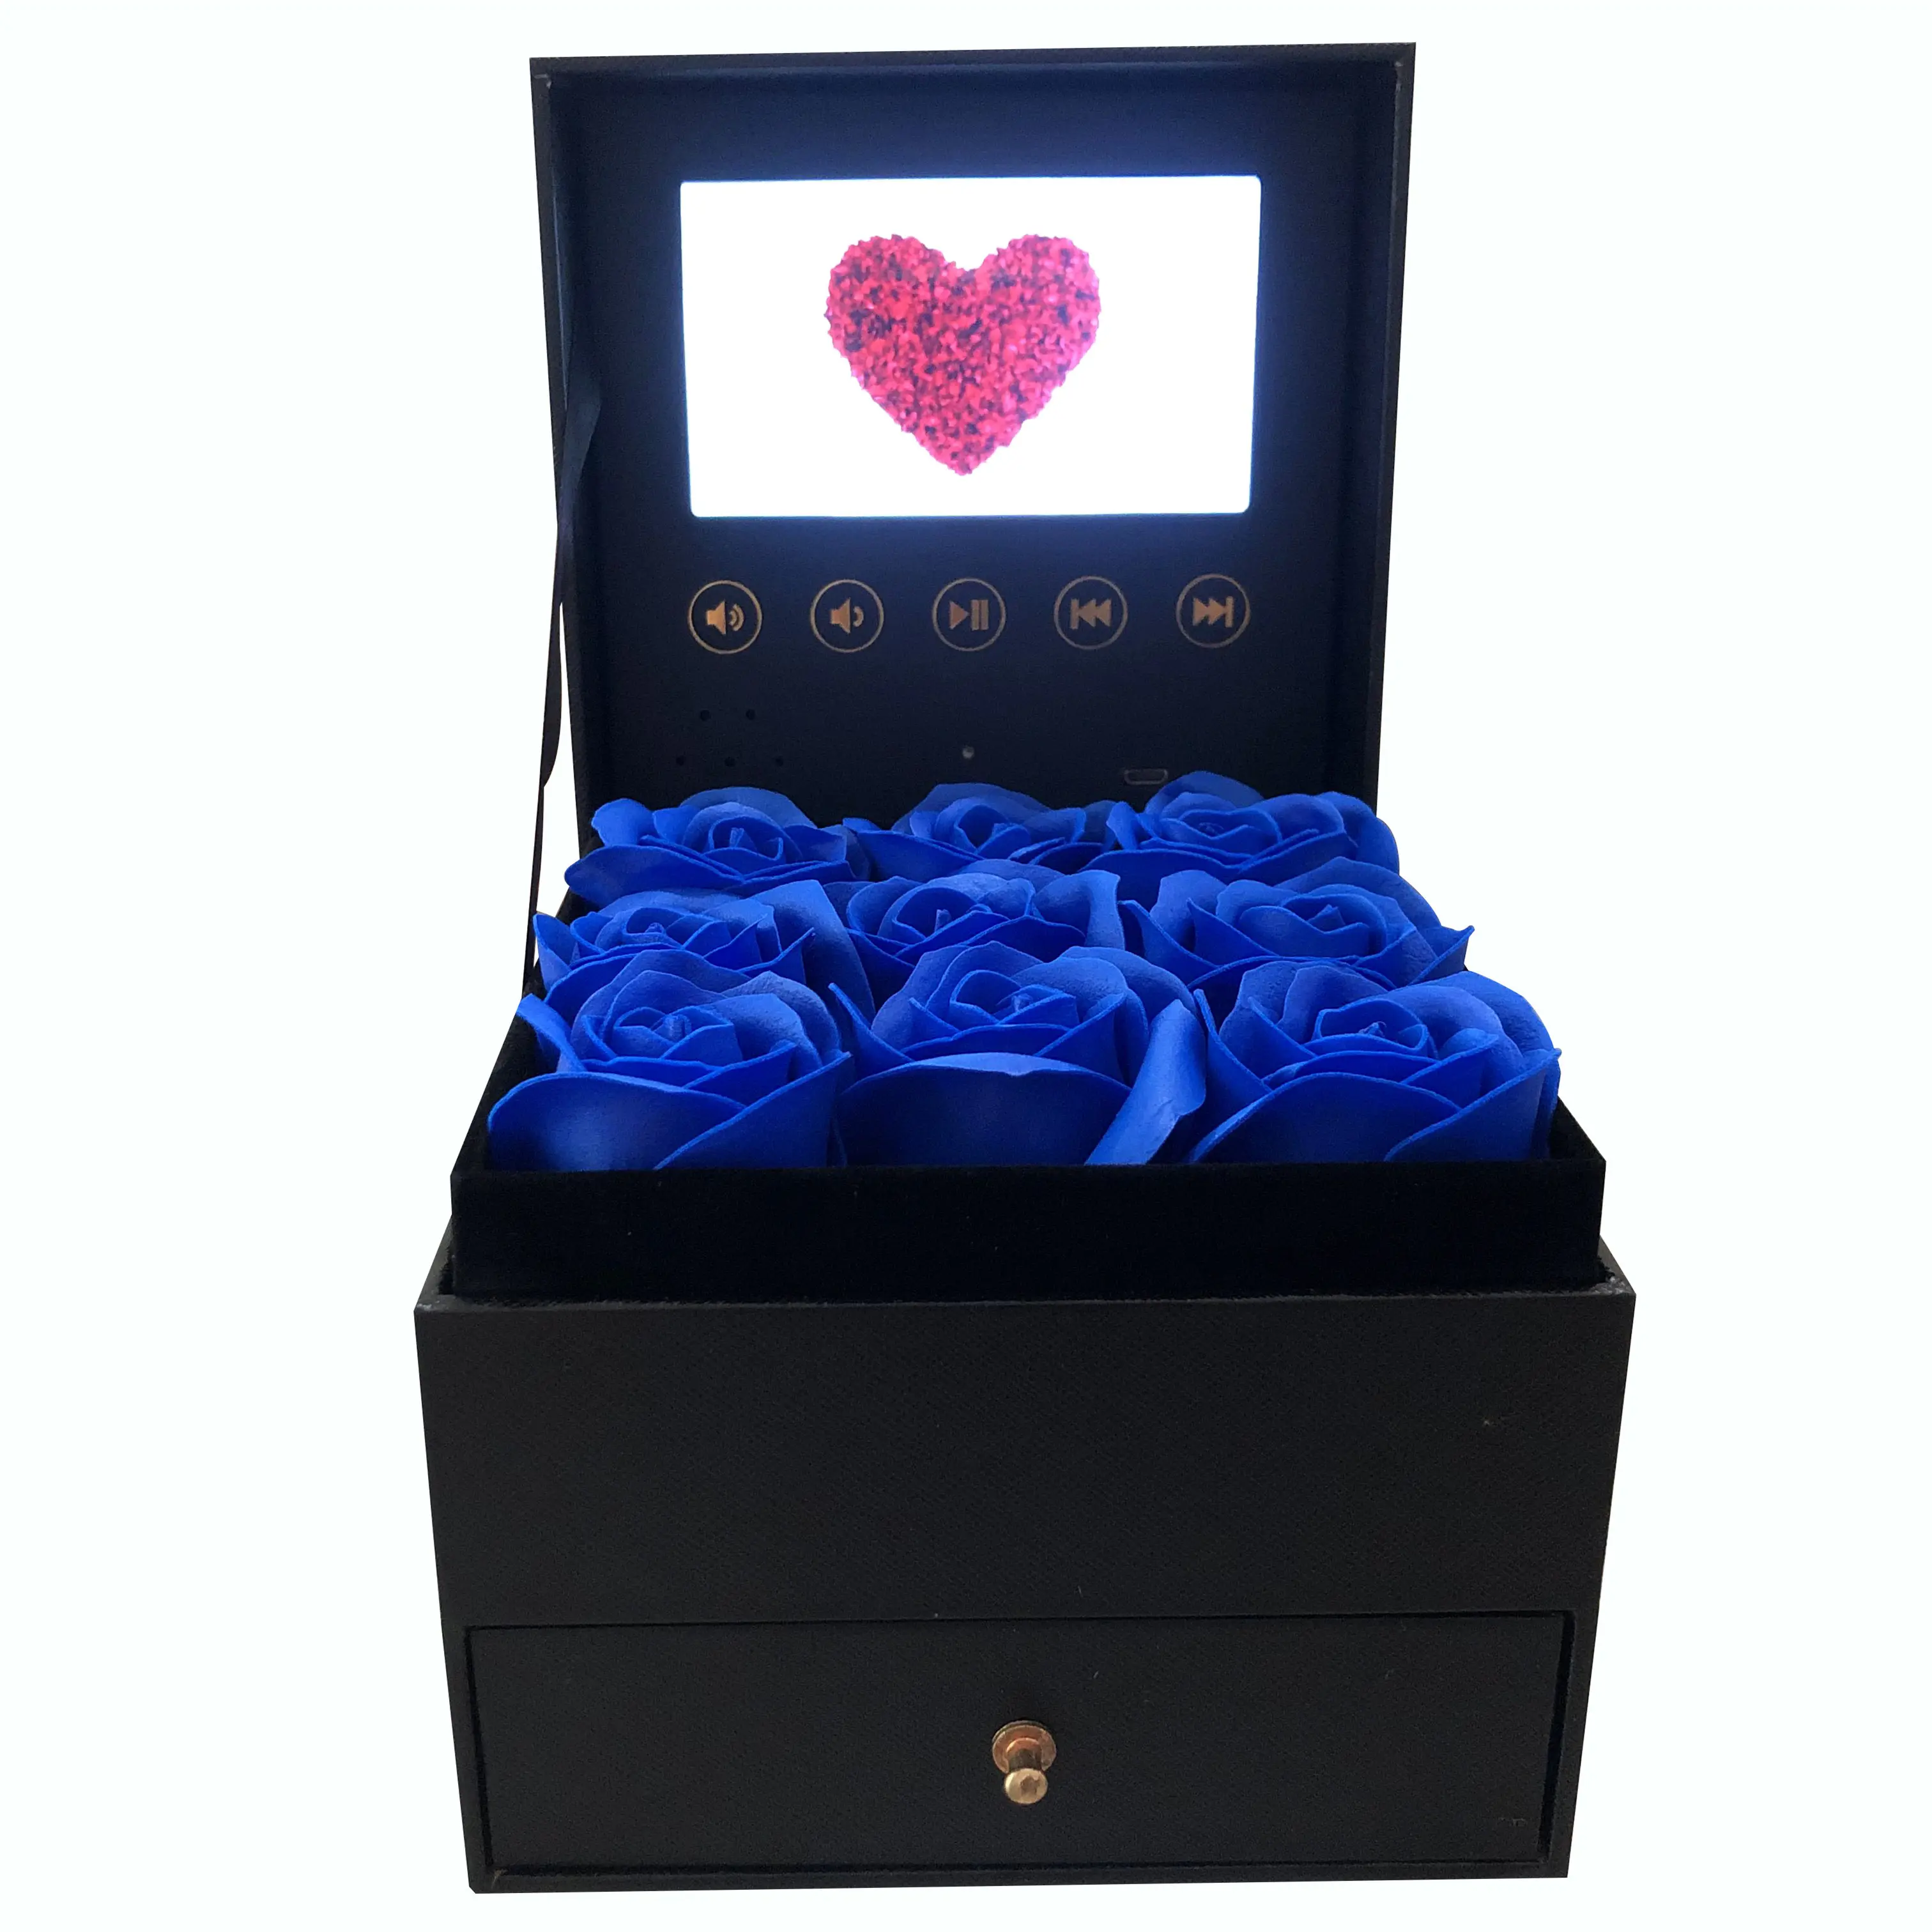 Großhandel Lcd Video Box mit Blumen dekoration für Celebration Party Supplies